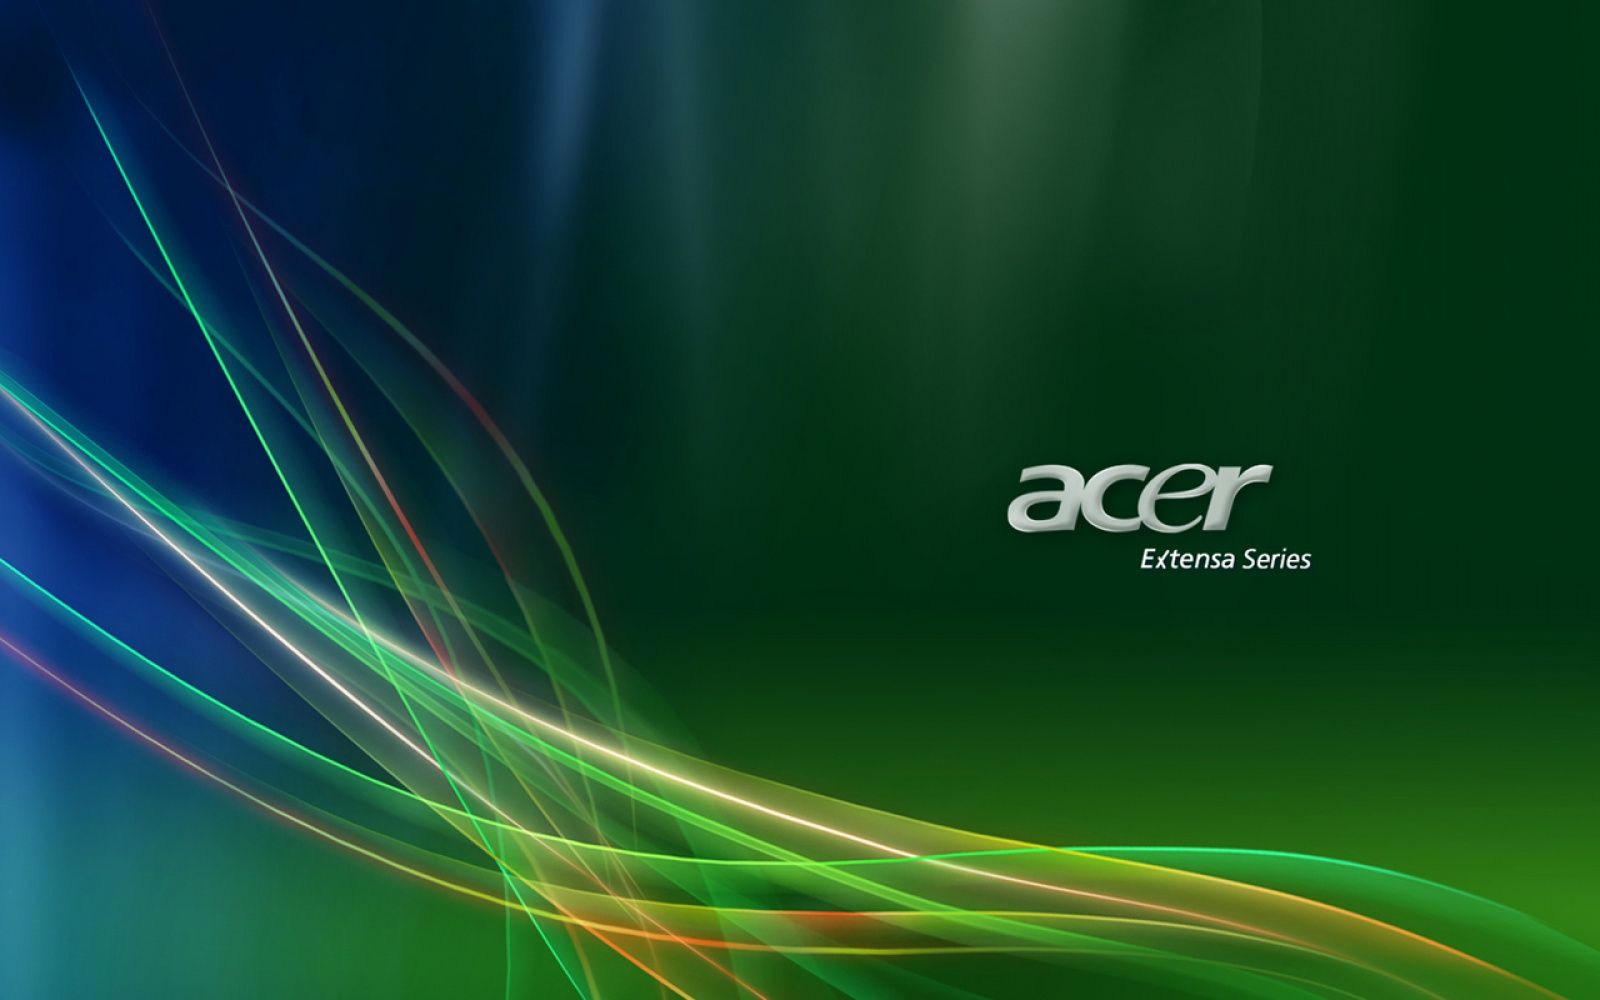 Acer Desktop Wallpaper Free Acer Desktop Background